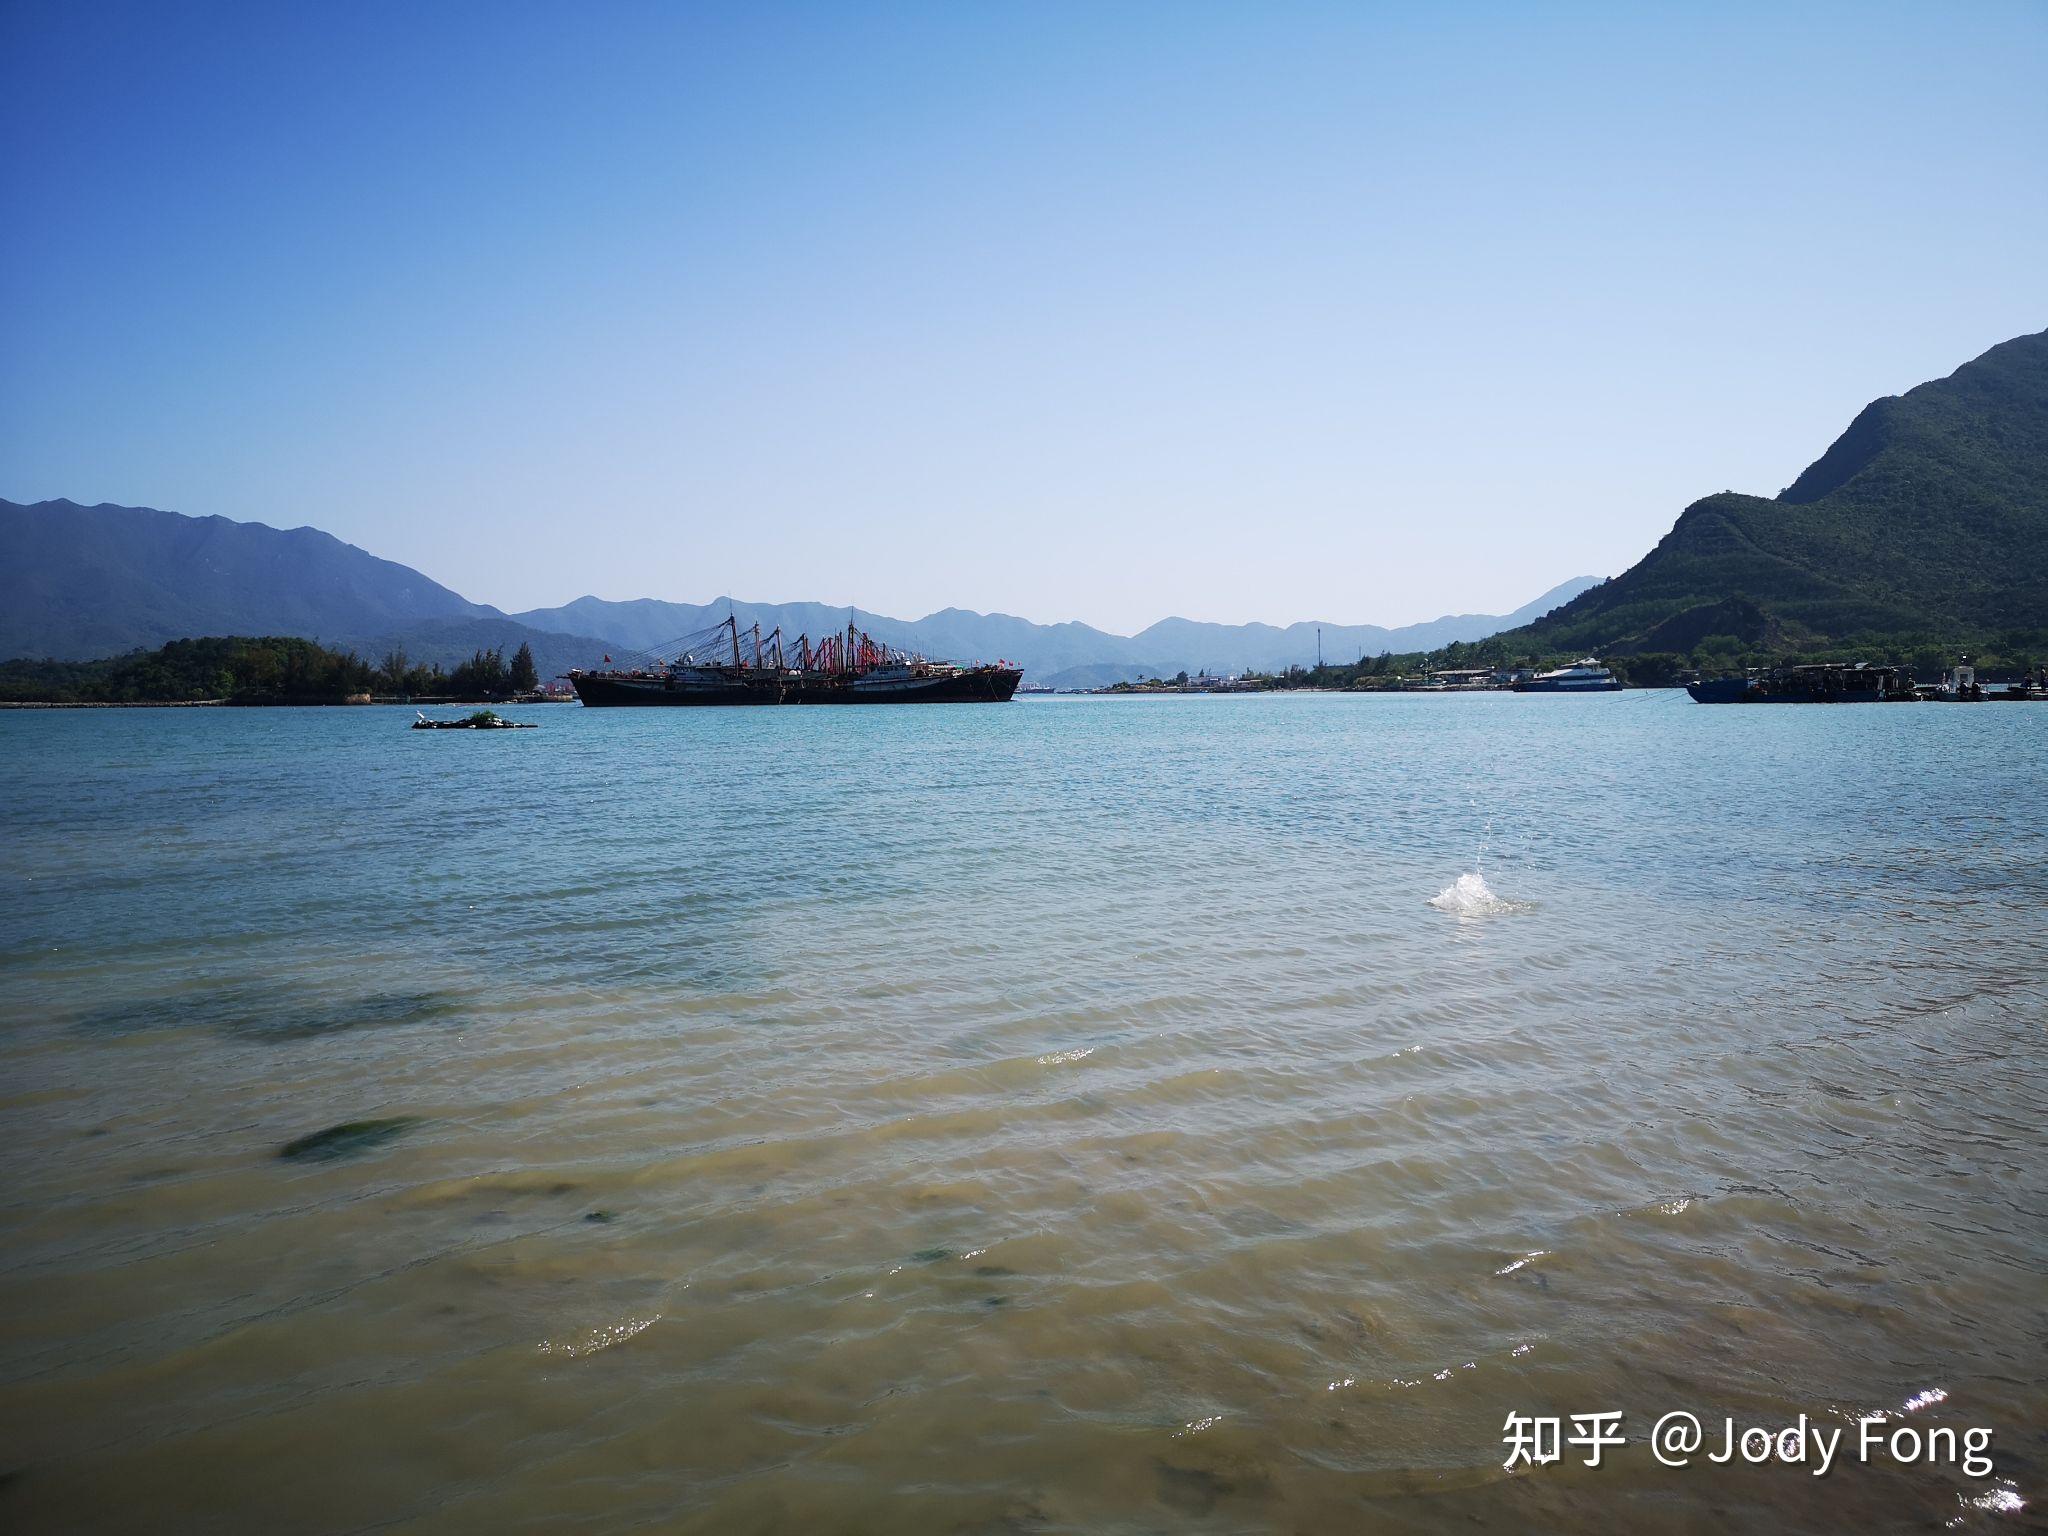 【携程攻略】惠州小桂湾风景区景点,沙滩比较干净、游泳的人也不多，附近吃喝玩乐都很方便。